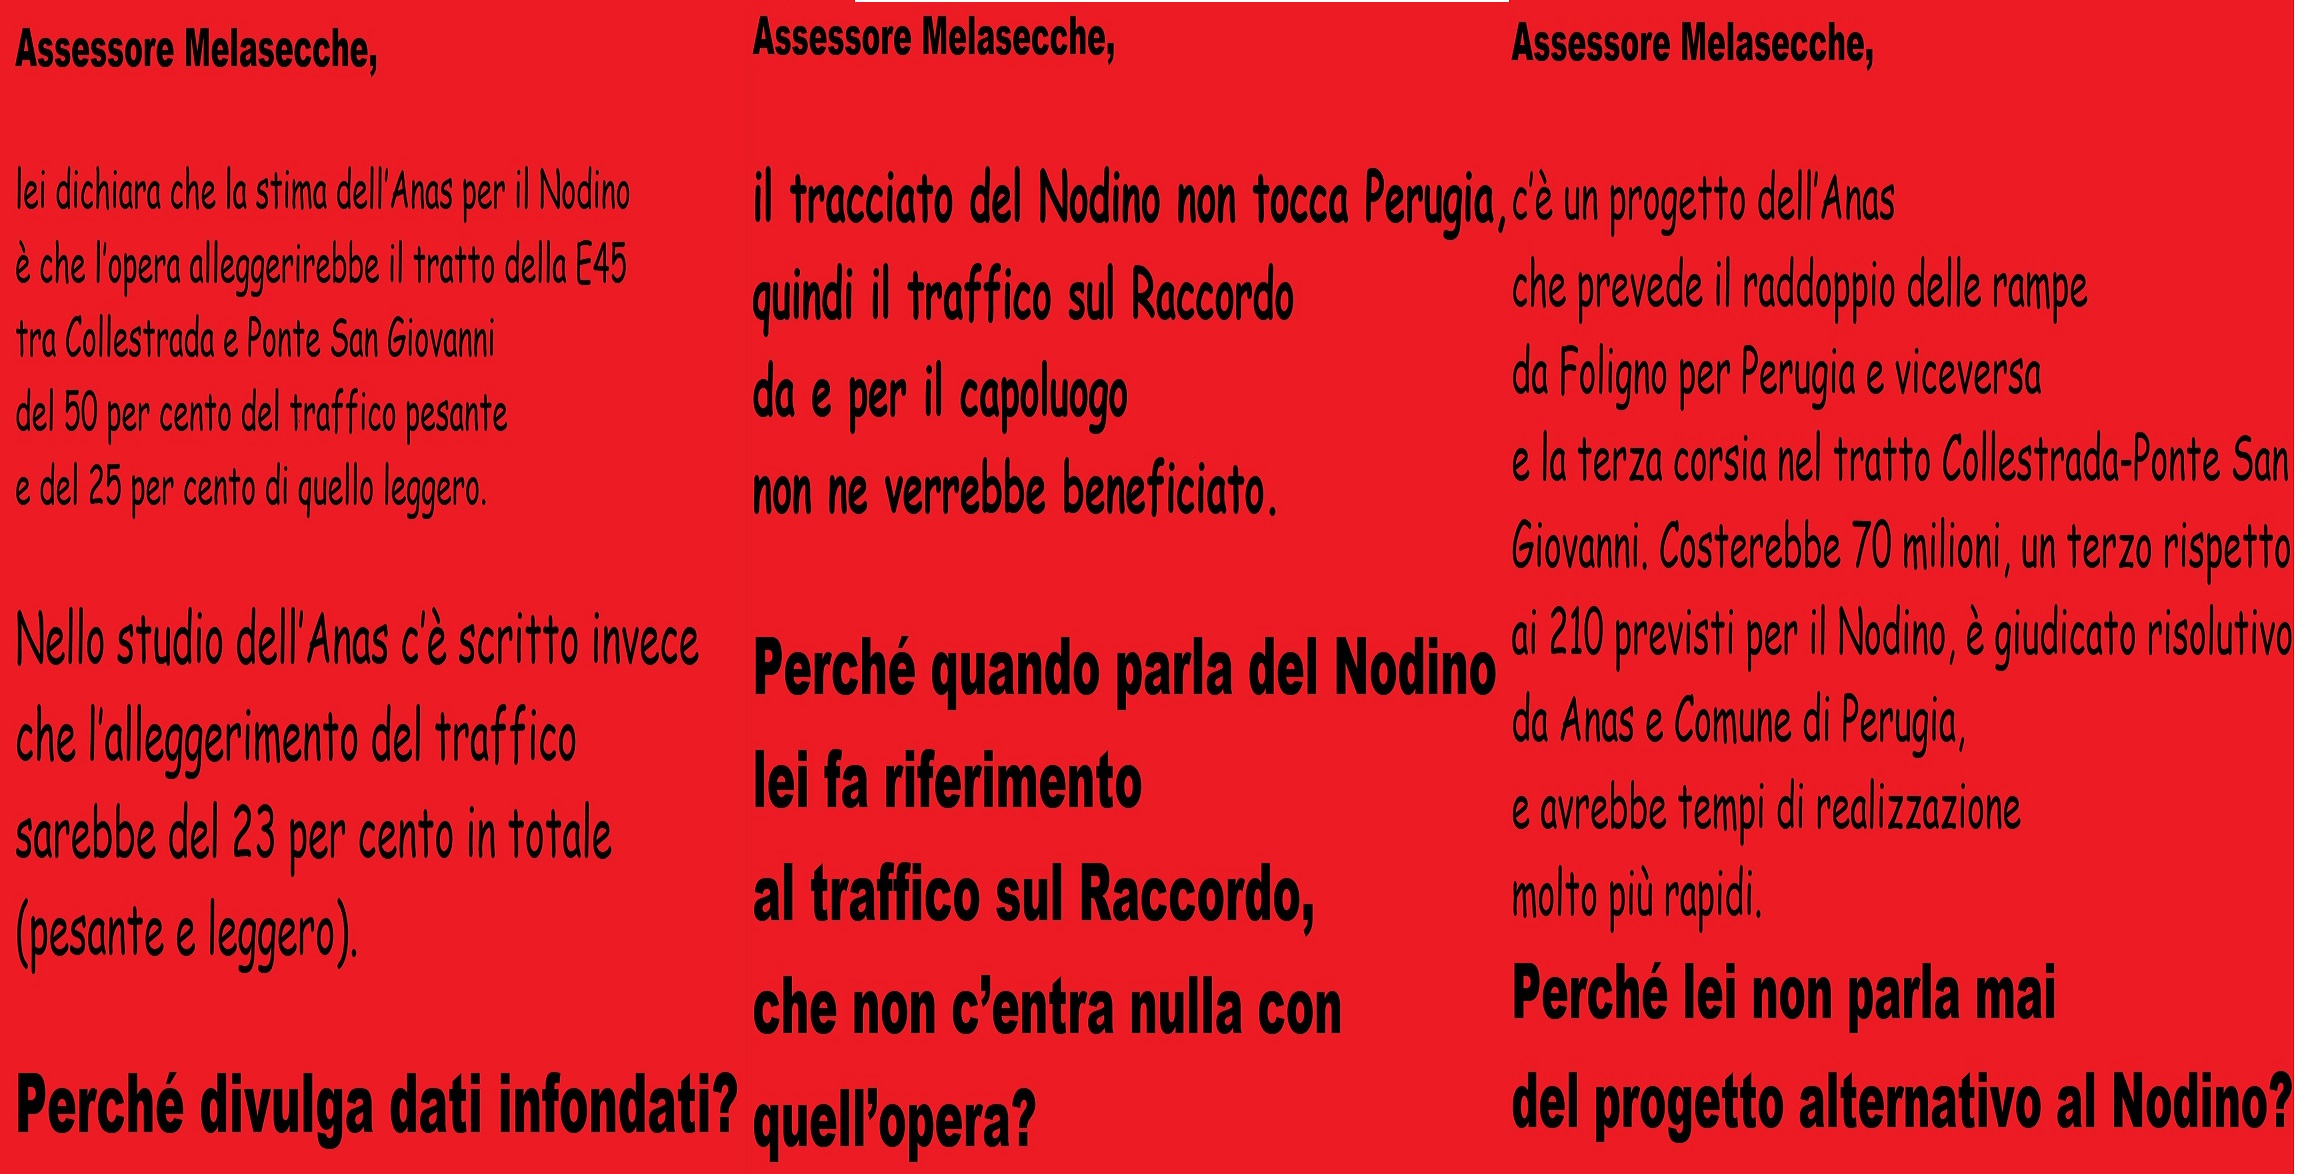 Tre domande all'assessore Melasecche sul Nodino di Perugia